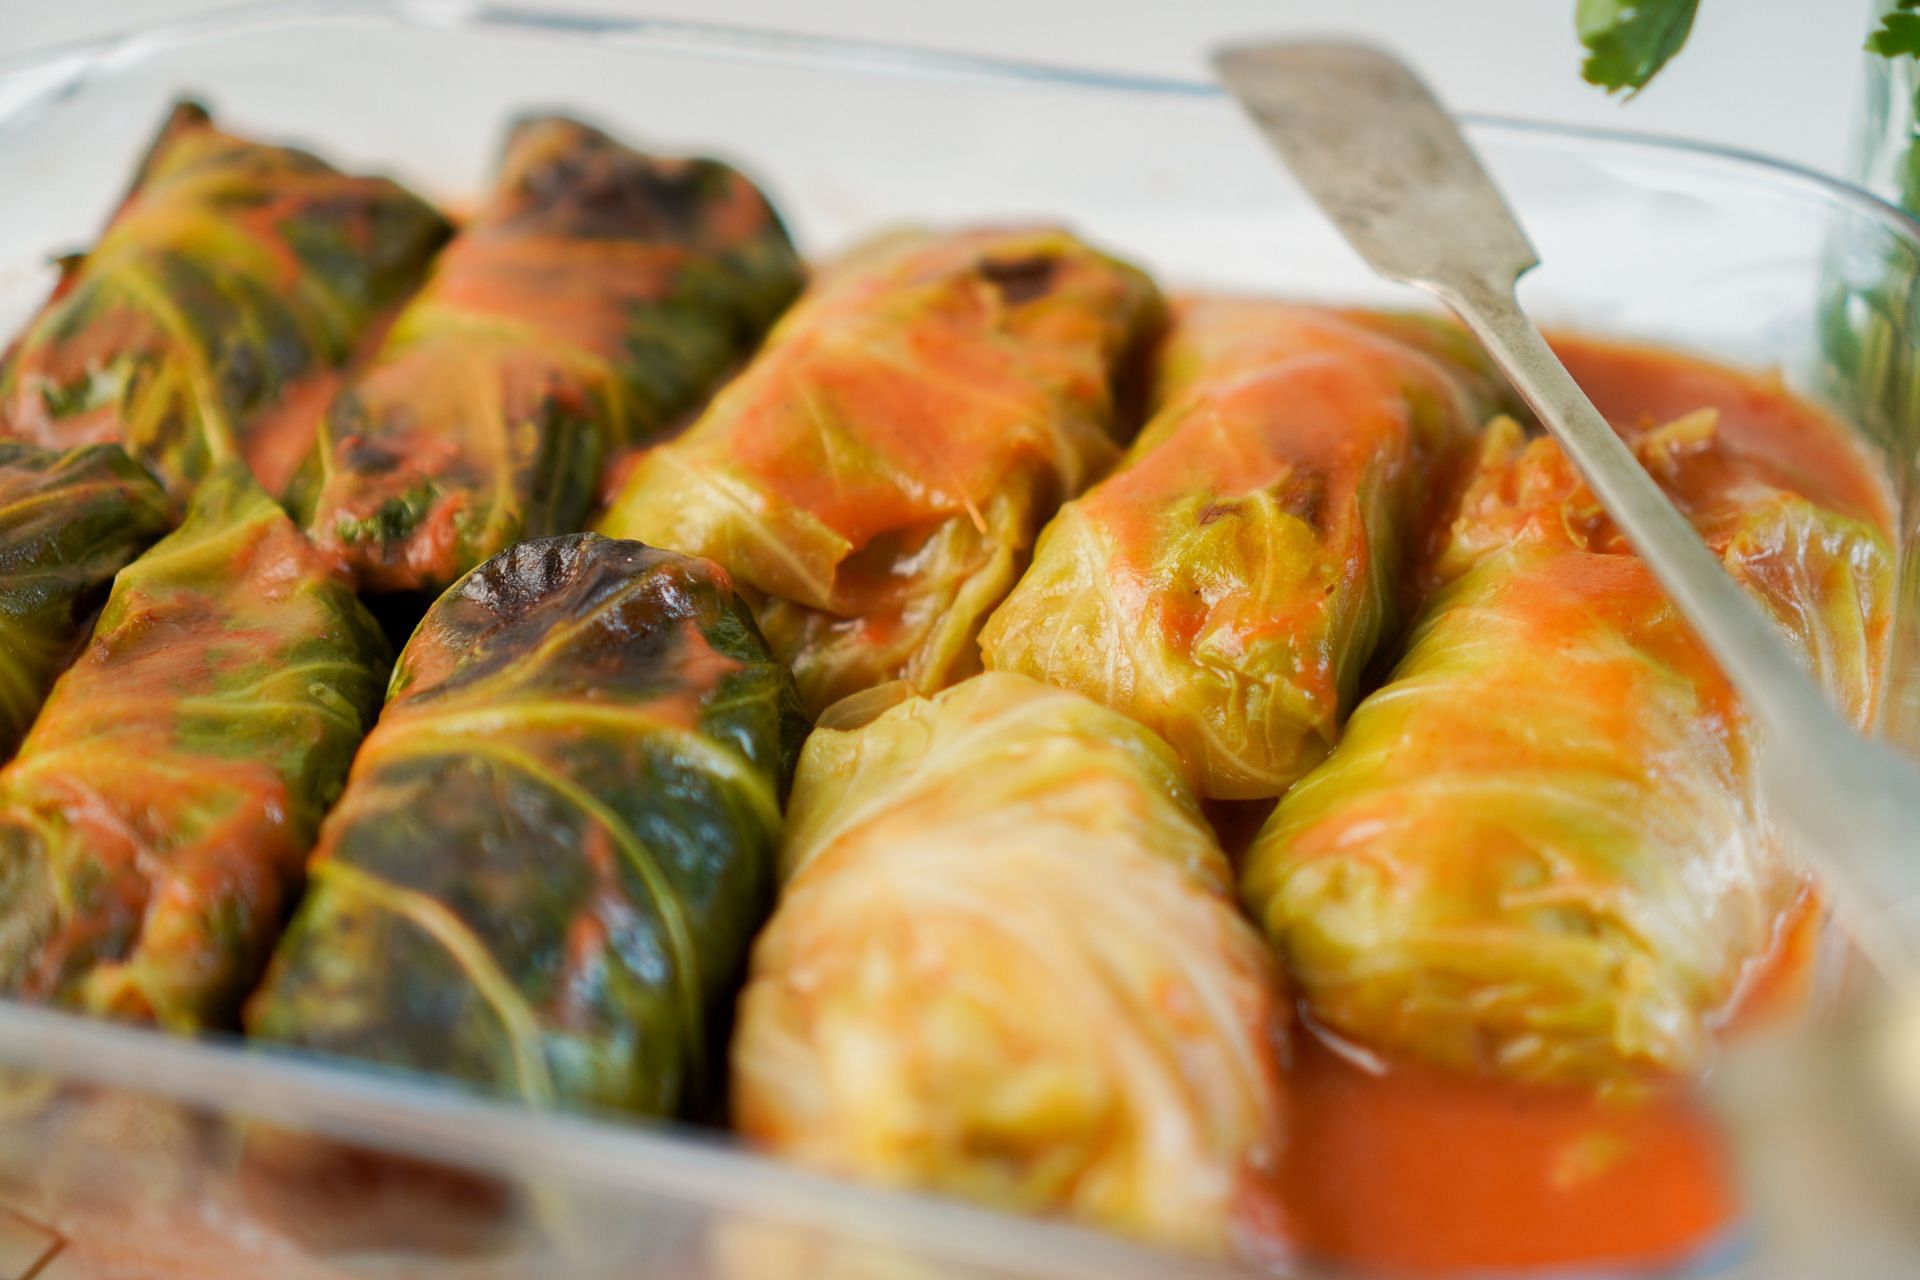 Nutrition in cabbage: Cabbage meat wraps are popular. (Image via Unsplash/Karolina Kołodziejczak)